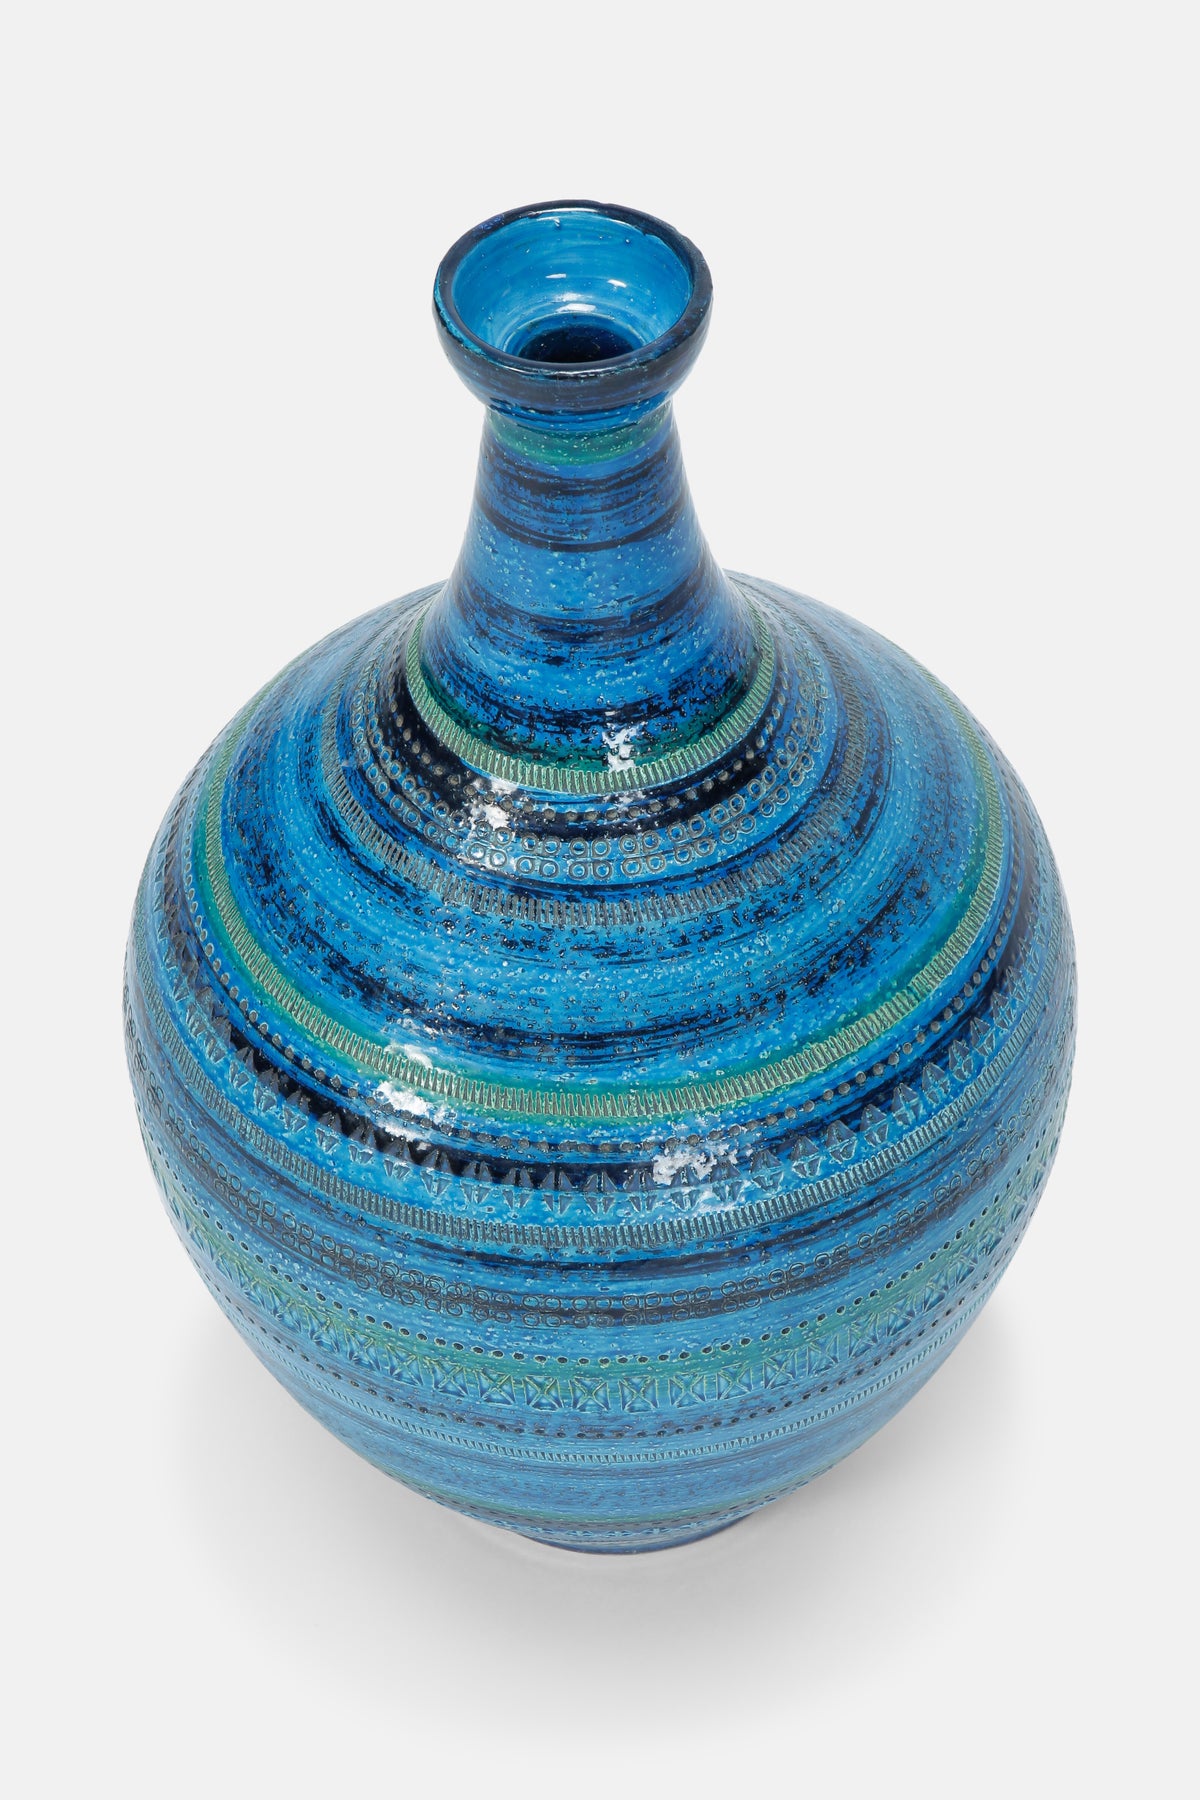 Grosse Aldo Londi „Rimini Blu“ Vase Bitossi, 60er